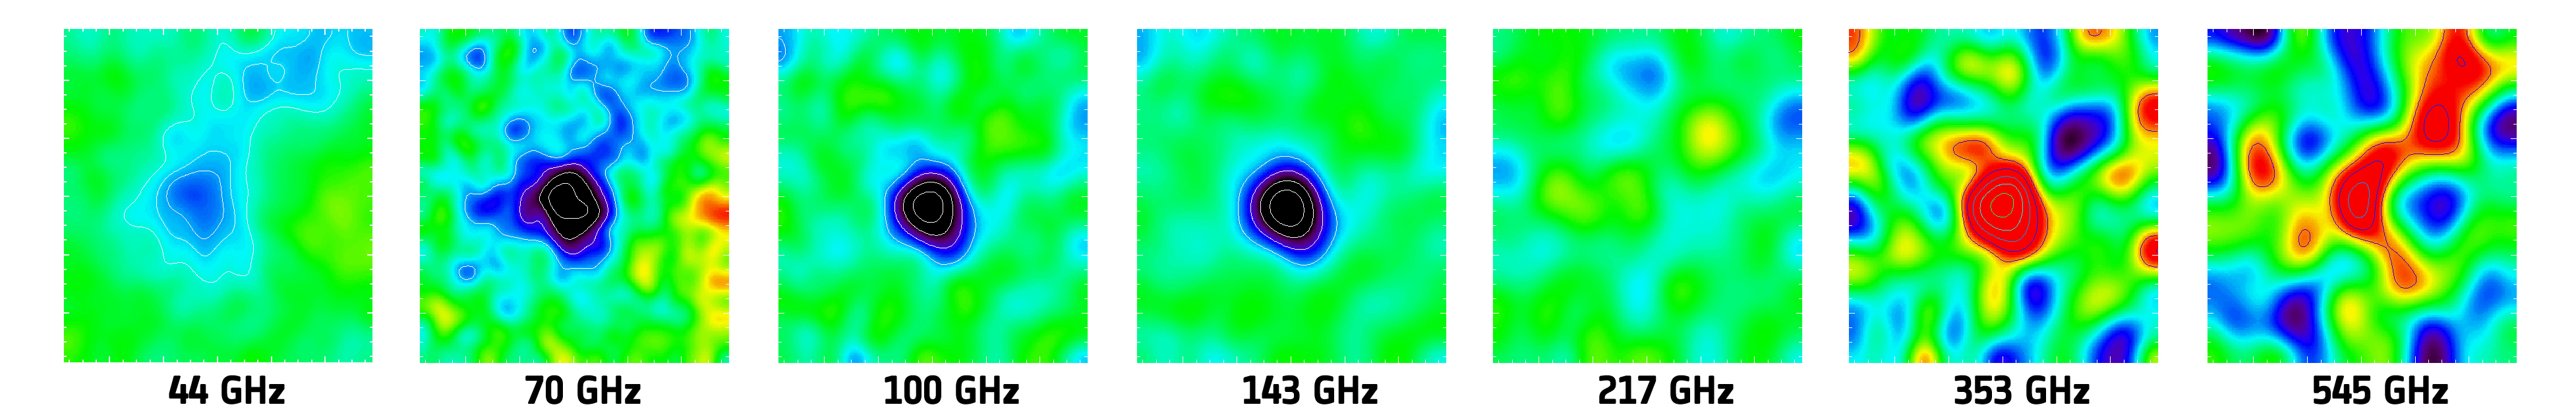 実際の観測例。低周波数では暗く(青色)、高周波数では明るく(赤色)なっている。217GHzでは変化がない(緑色)。